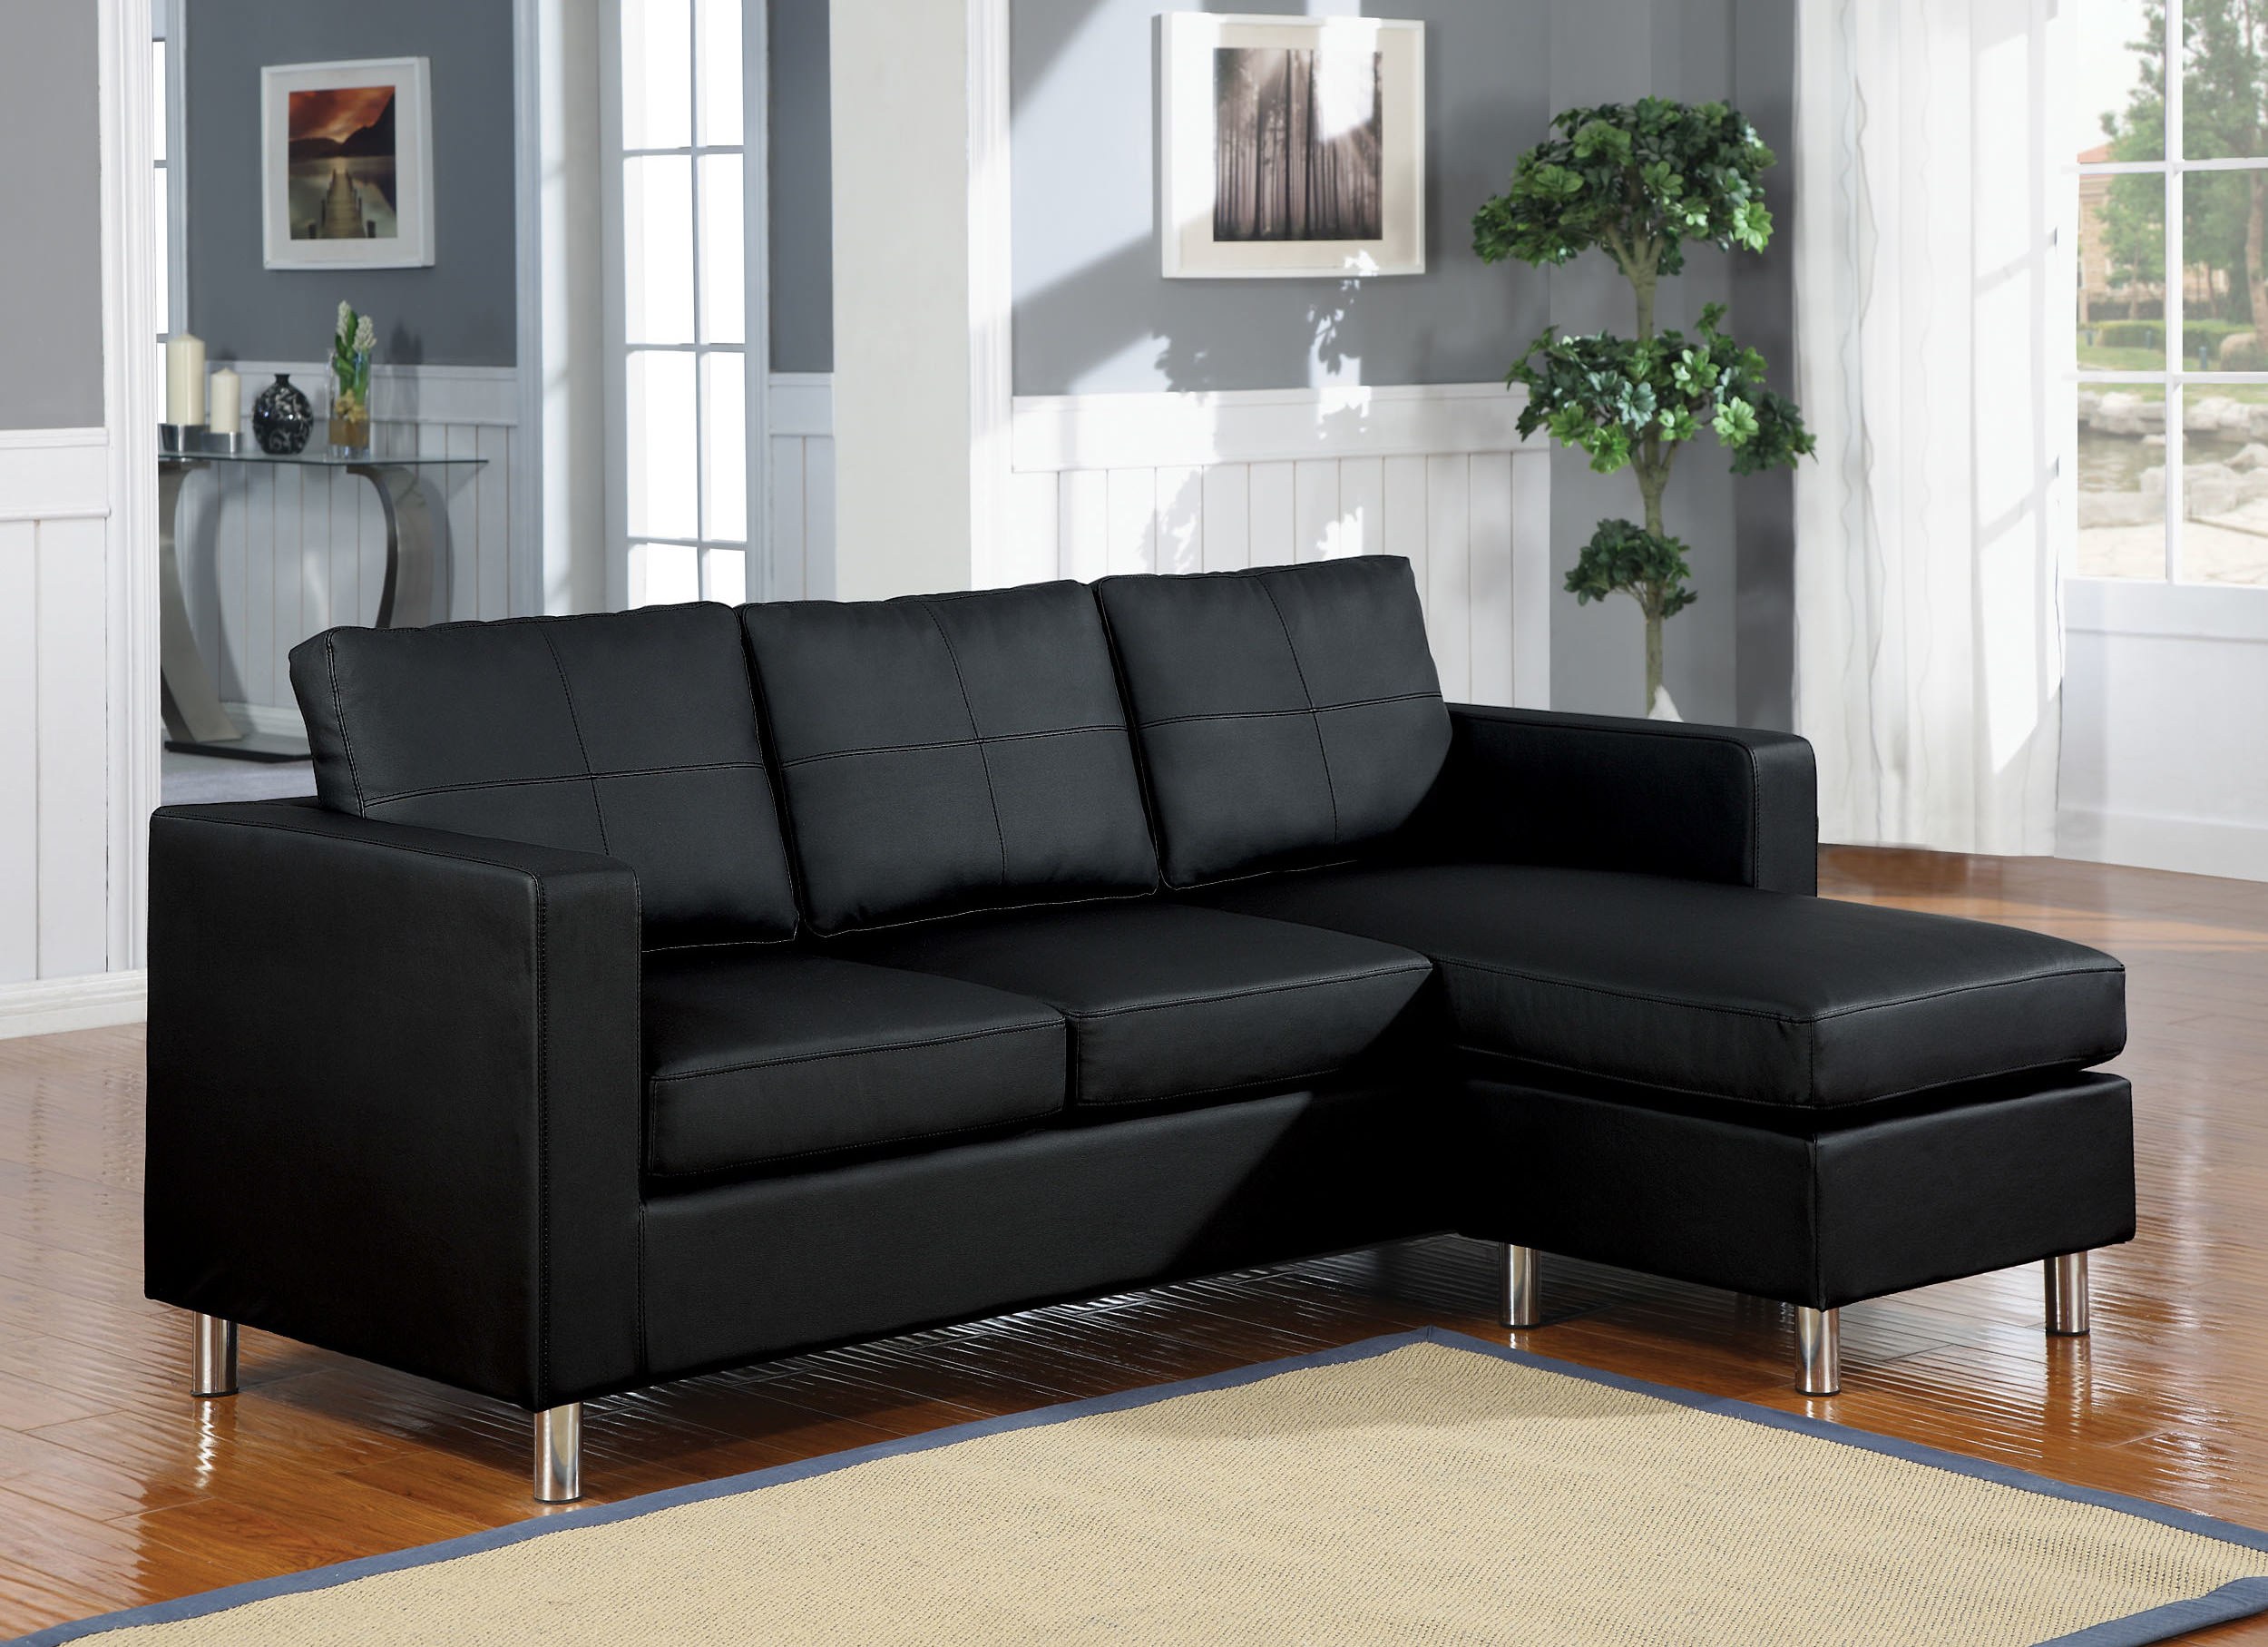 Sofa pictures. Черный диван. Черный кожаный диван. Черный кожаный угловой диван. Черный диван в интерьере.